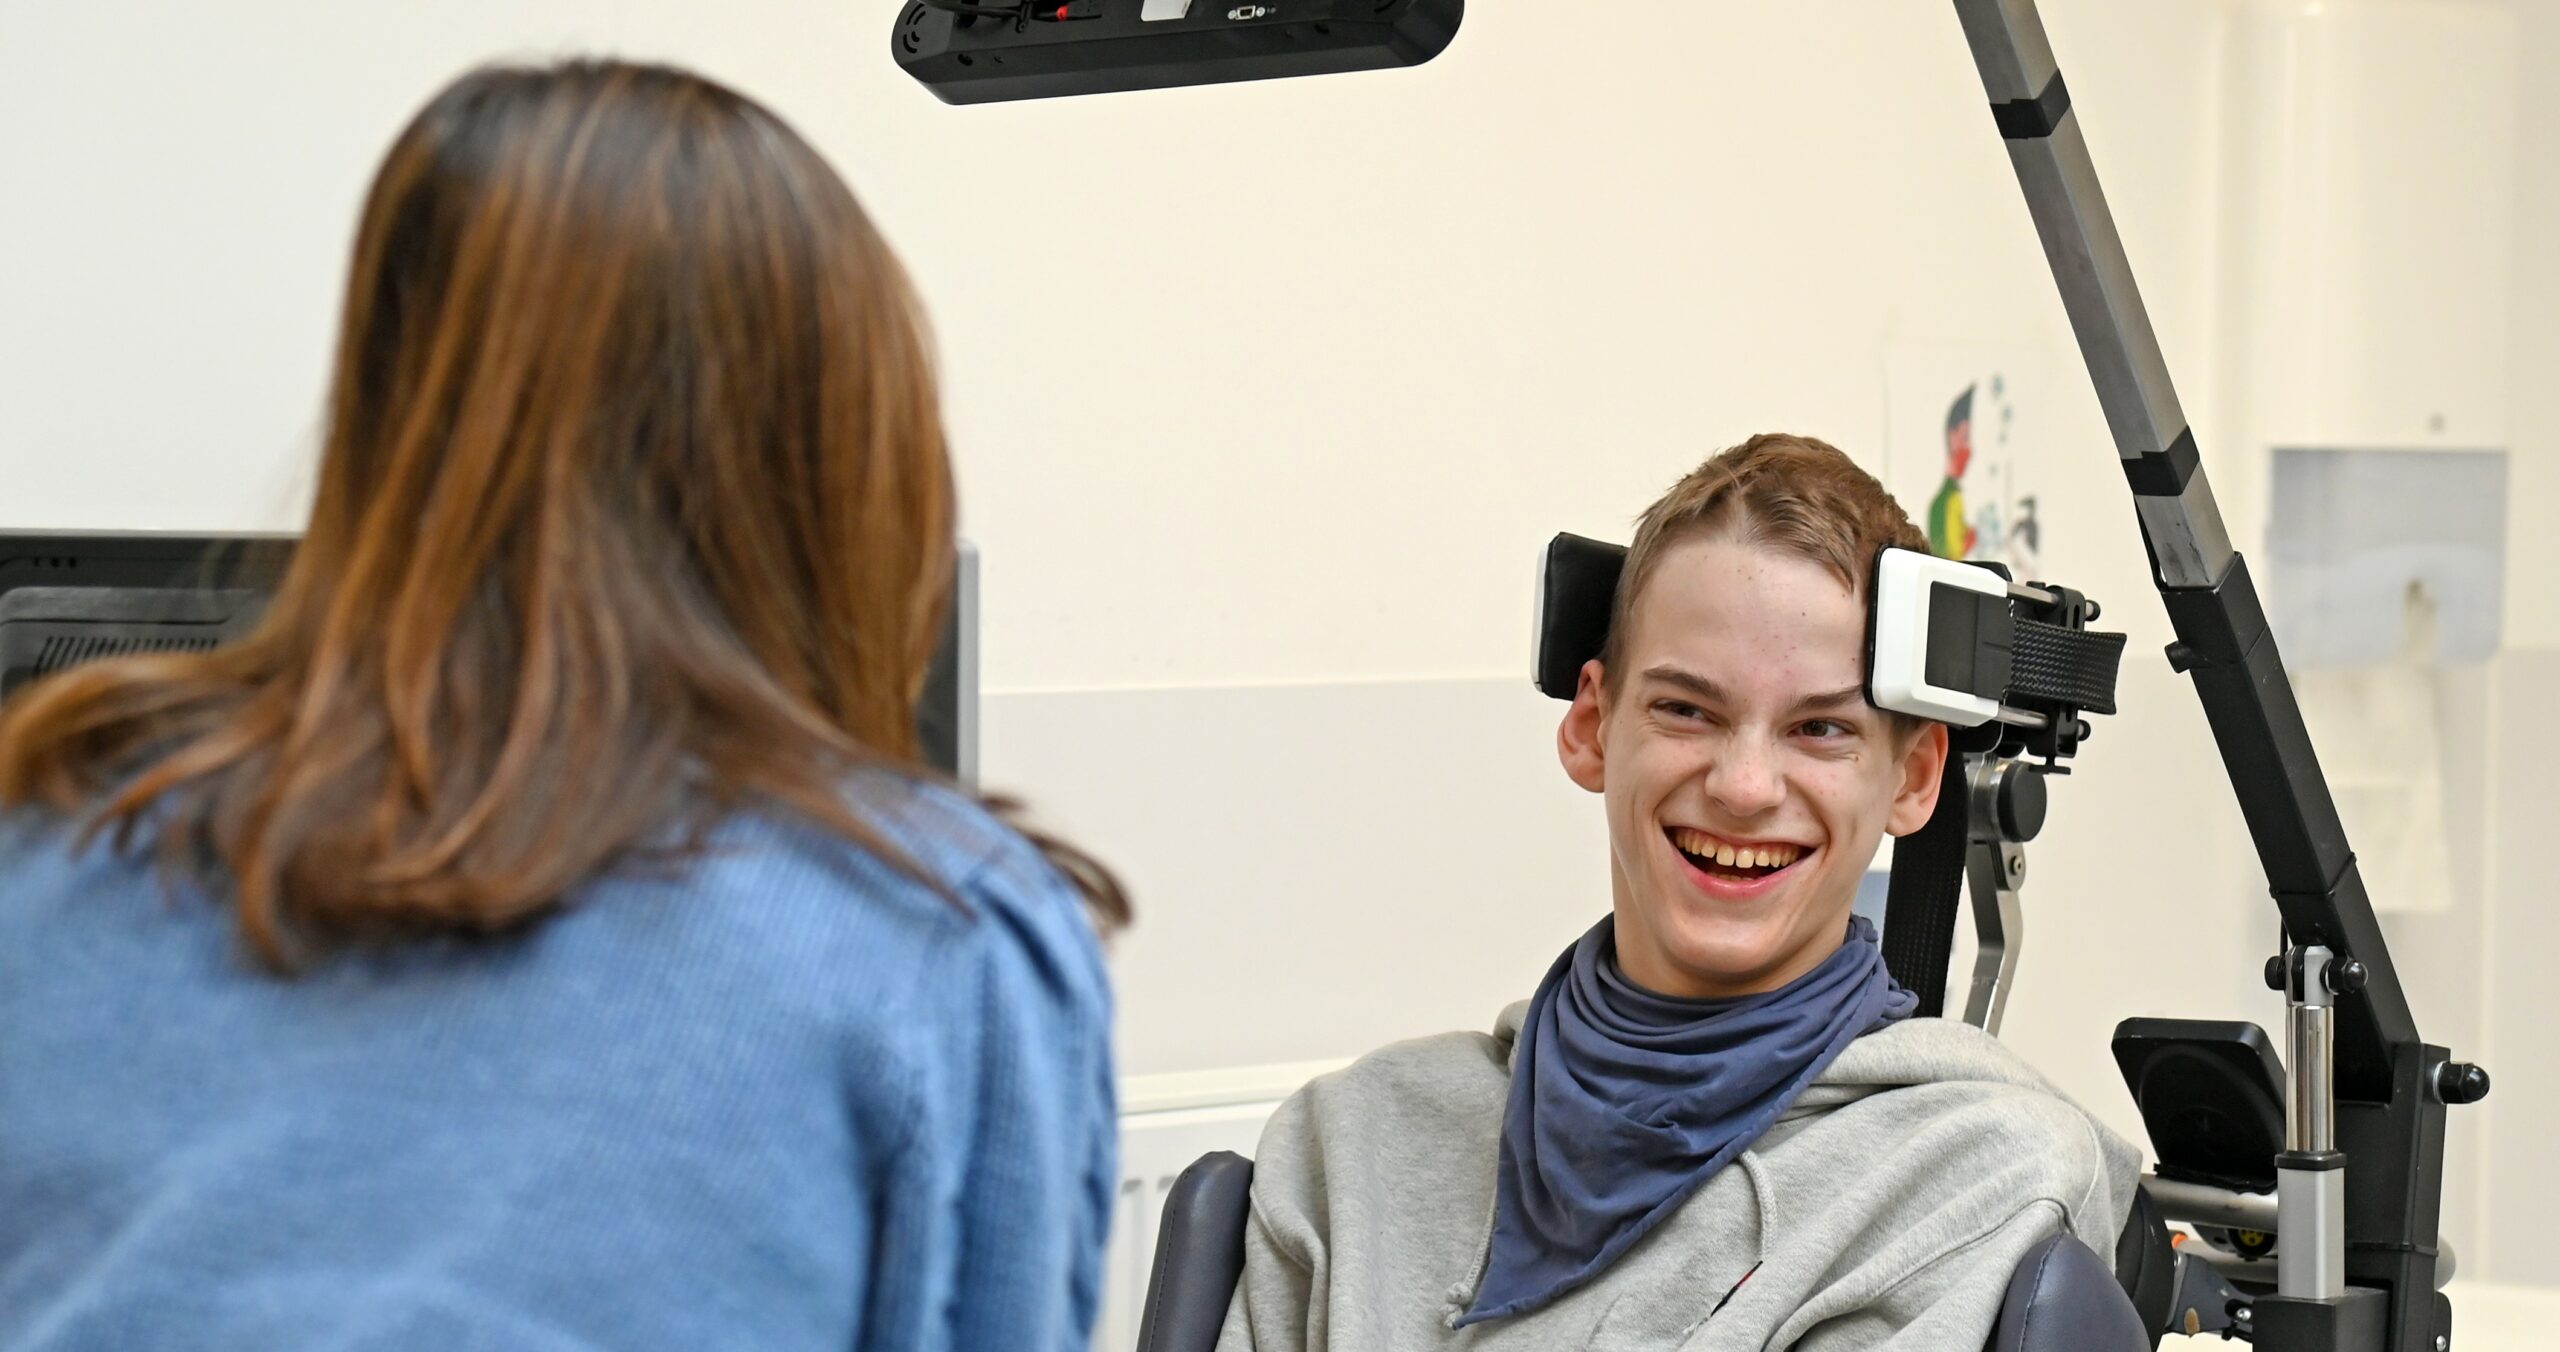 Levi Rijsbrack (22 jaar) is geboren met Cerebrale Parese. Dankzij een innovatief hoofdvoetbesturingssysteem kan hij zijn elektrische rolstoel op een ontspannen manier besturen. En dat is een enorme vooruitgang